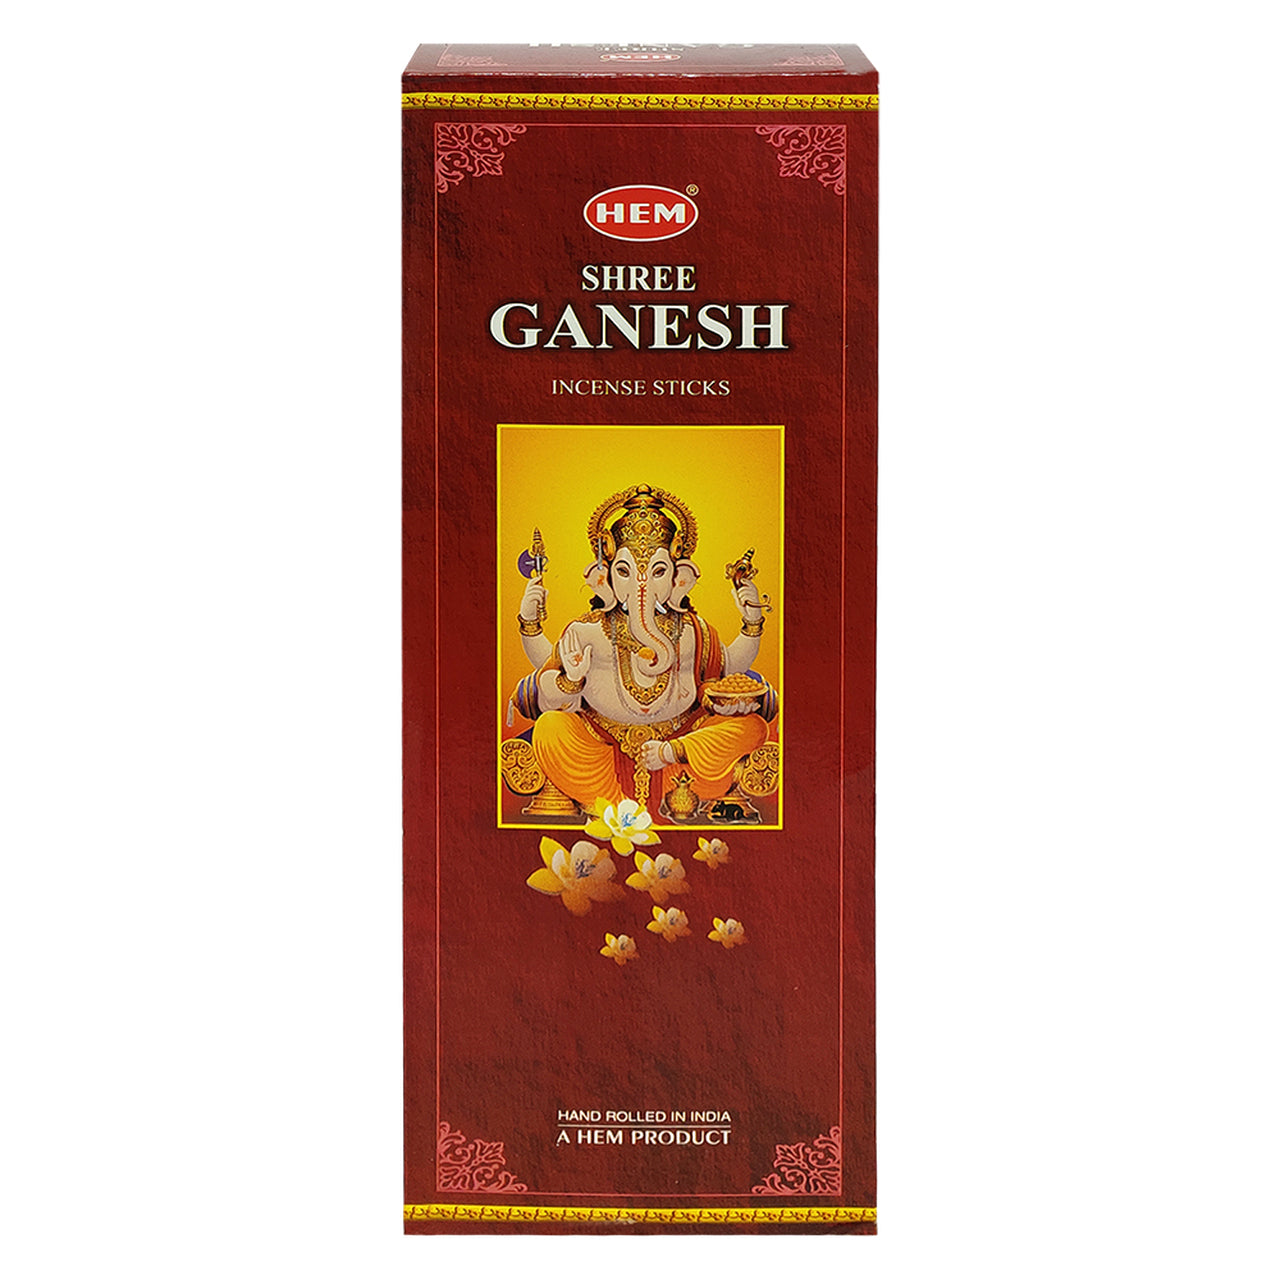 Hem Ganesh 20 Incense Sticks per inner box (6/box)